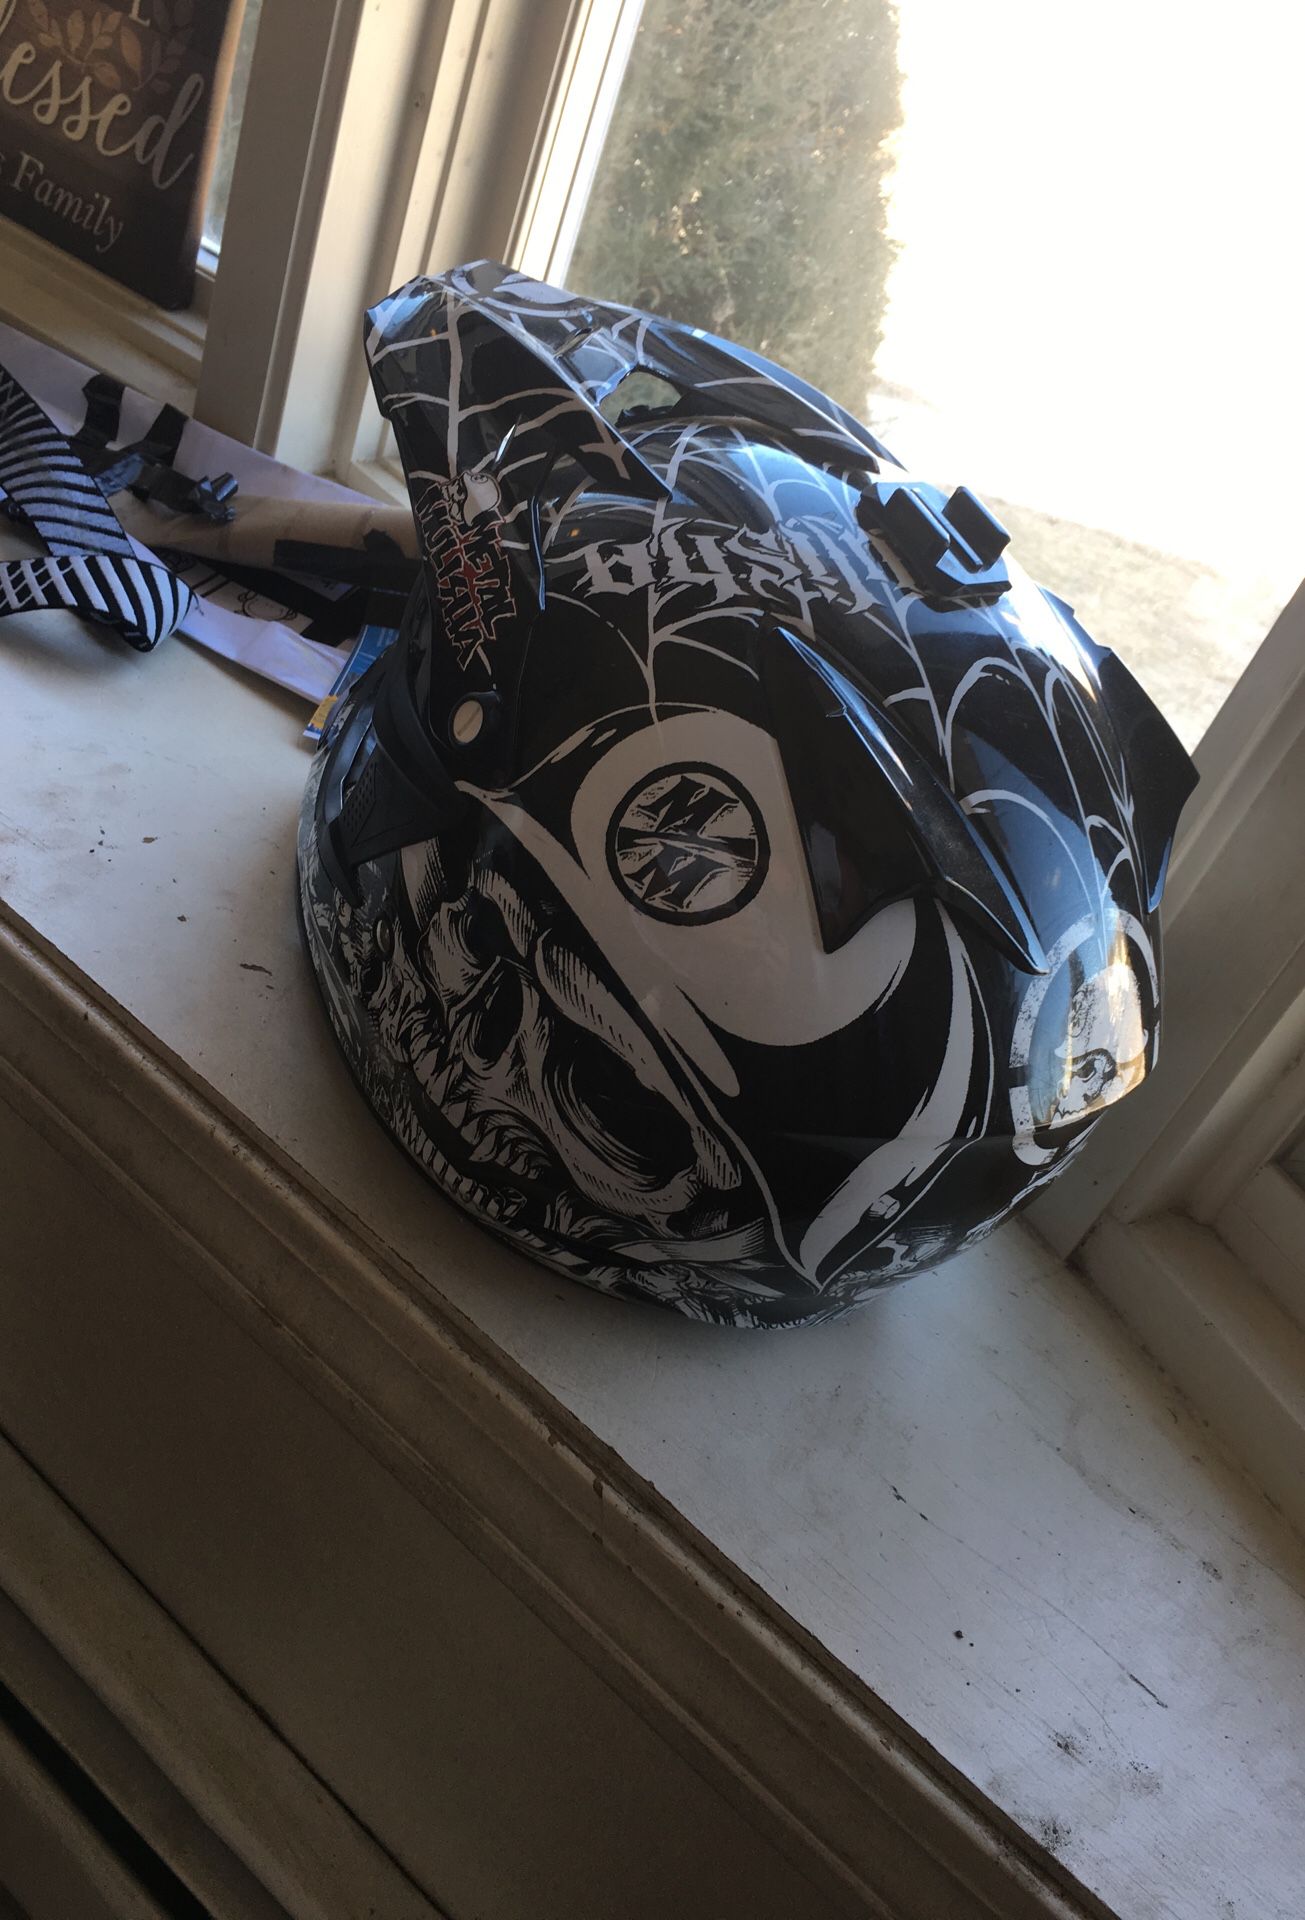 Metal militia off road motorcycle helmet